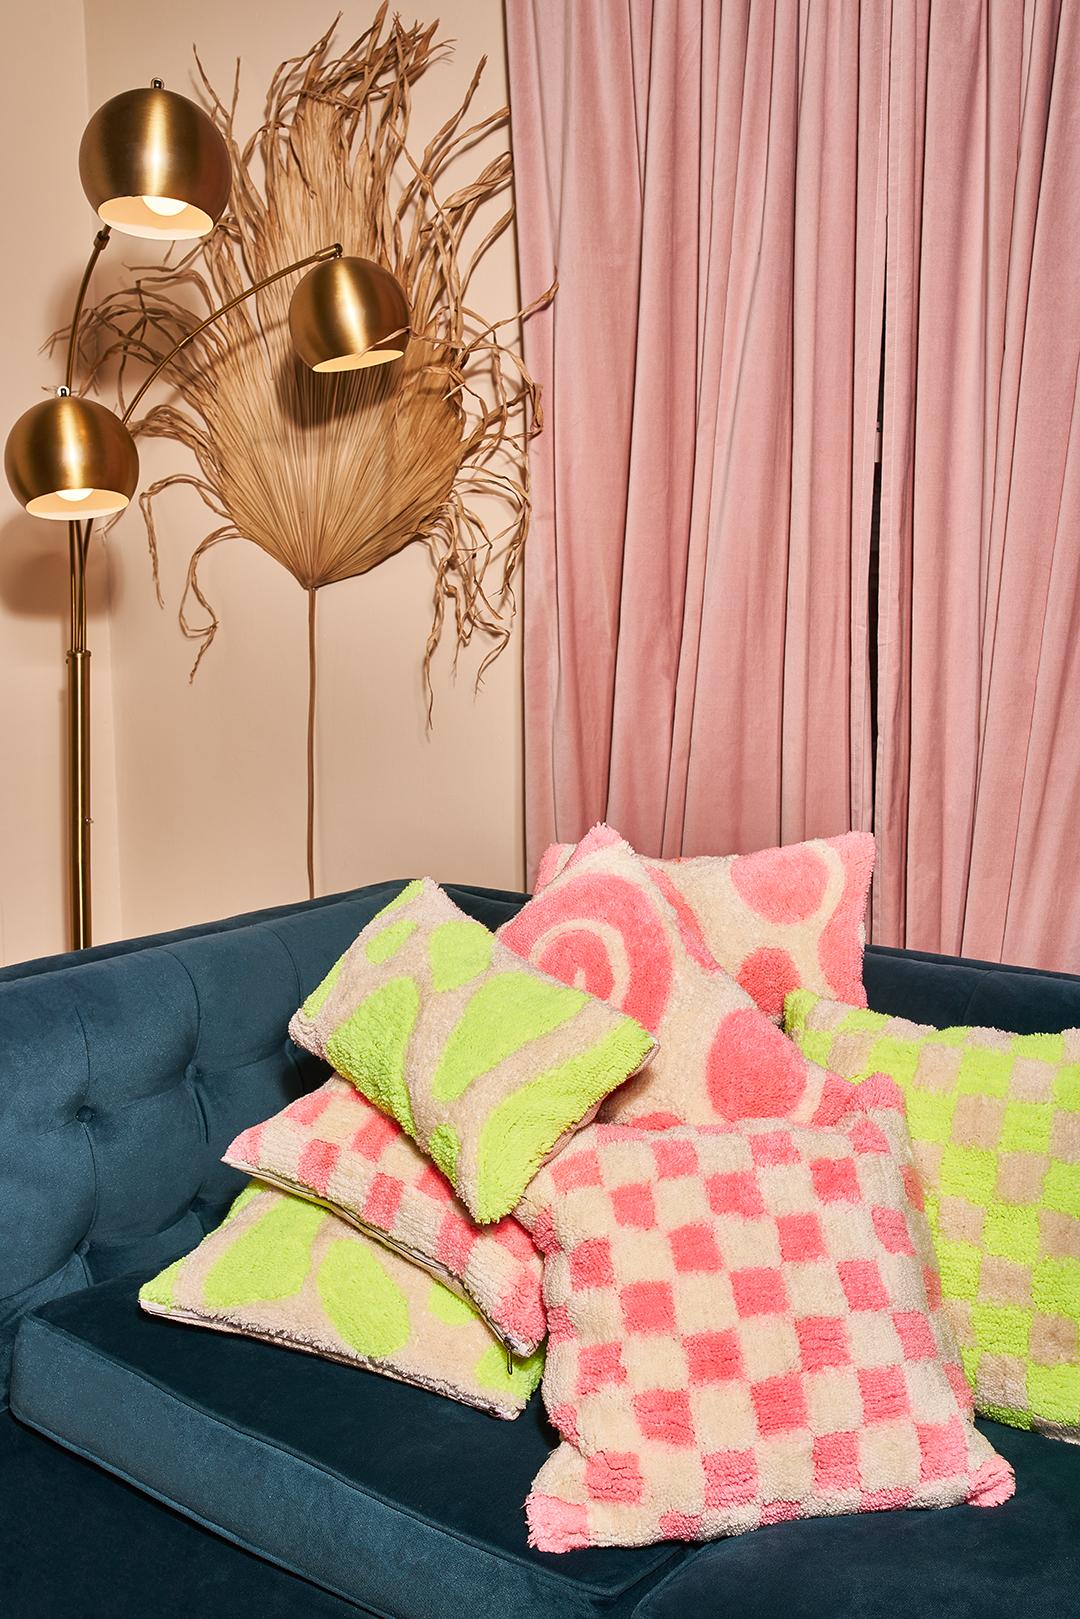 Wunderschönes rosa und cremefarbenes Karokissen, der perfekte Farbakzent für Ihr Wohn- oder Schlafzimmer.

Acrylgarn, mit Reißverschluss.

Maße: 18 in x 18 in

Von mir entworfen und in Indien handgefertigt.